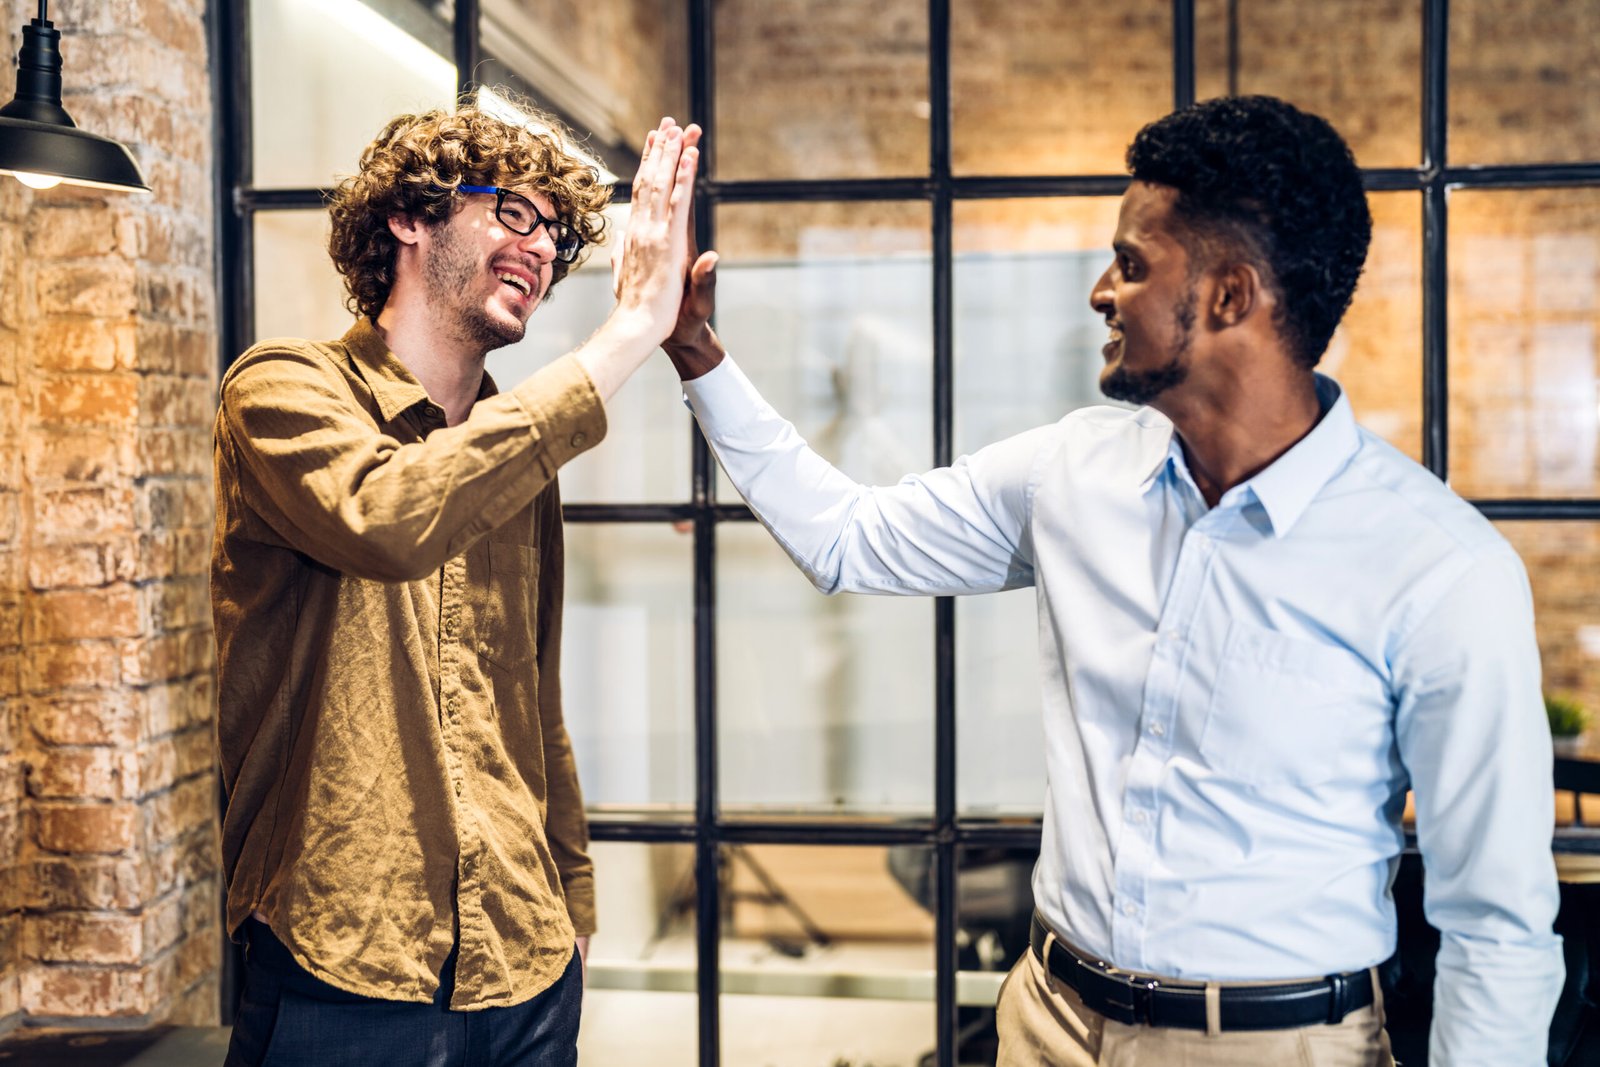 Un moment de complicité professionnelle : deux hommes d'affaires échangent un 'high-five' pour célébrer un succès, témoignant de la bonne entente et de l'esprit d'équipe.